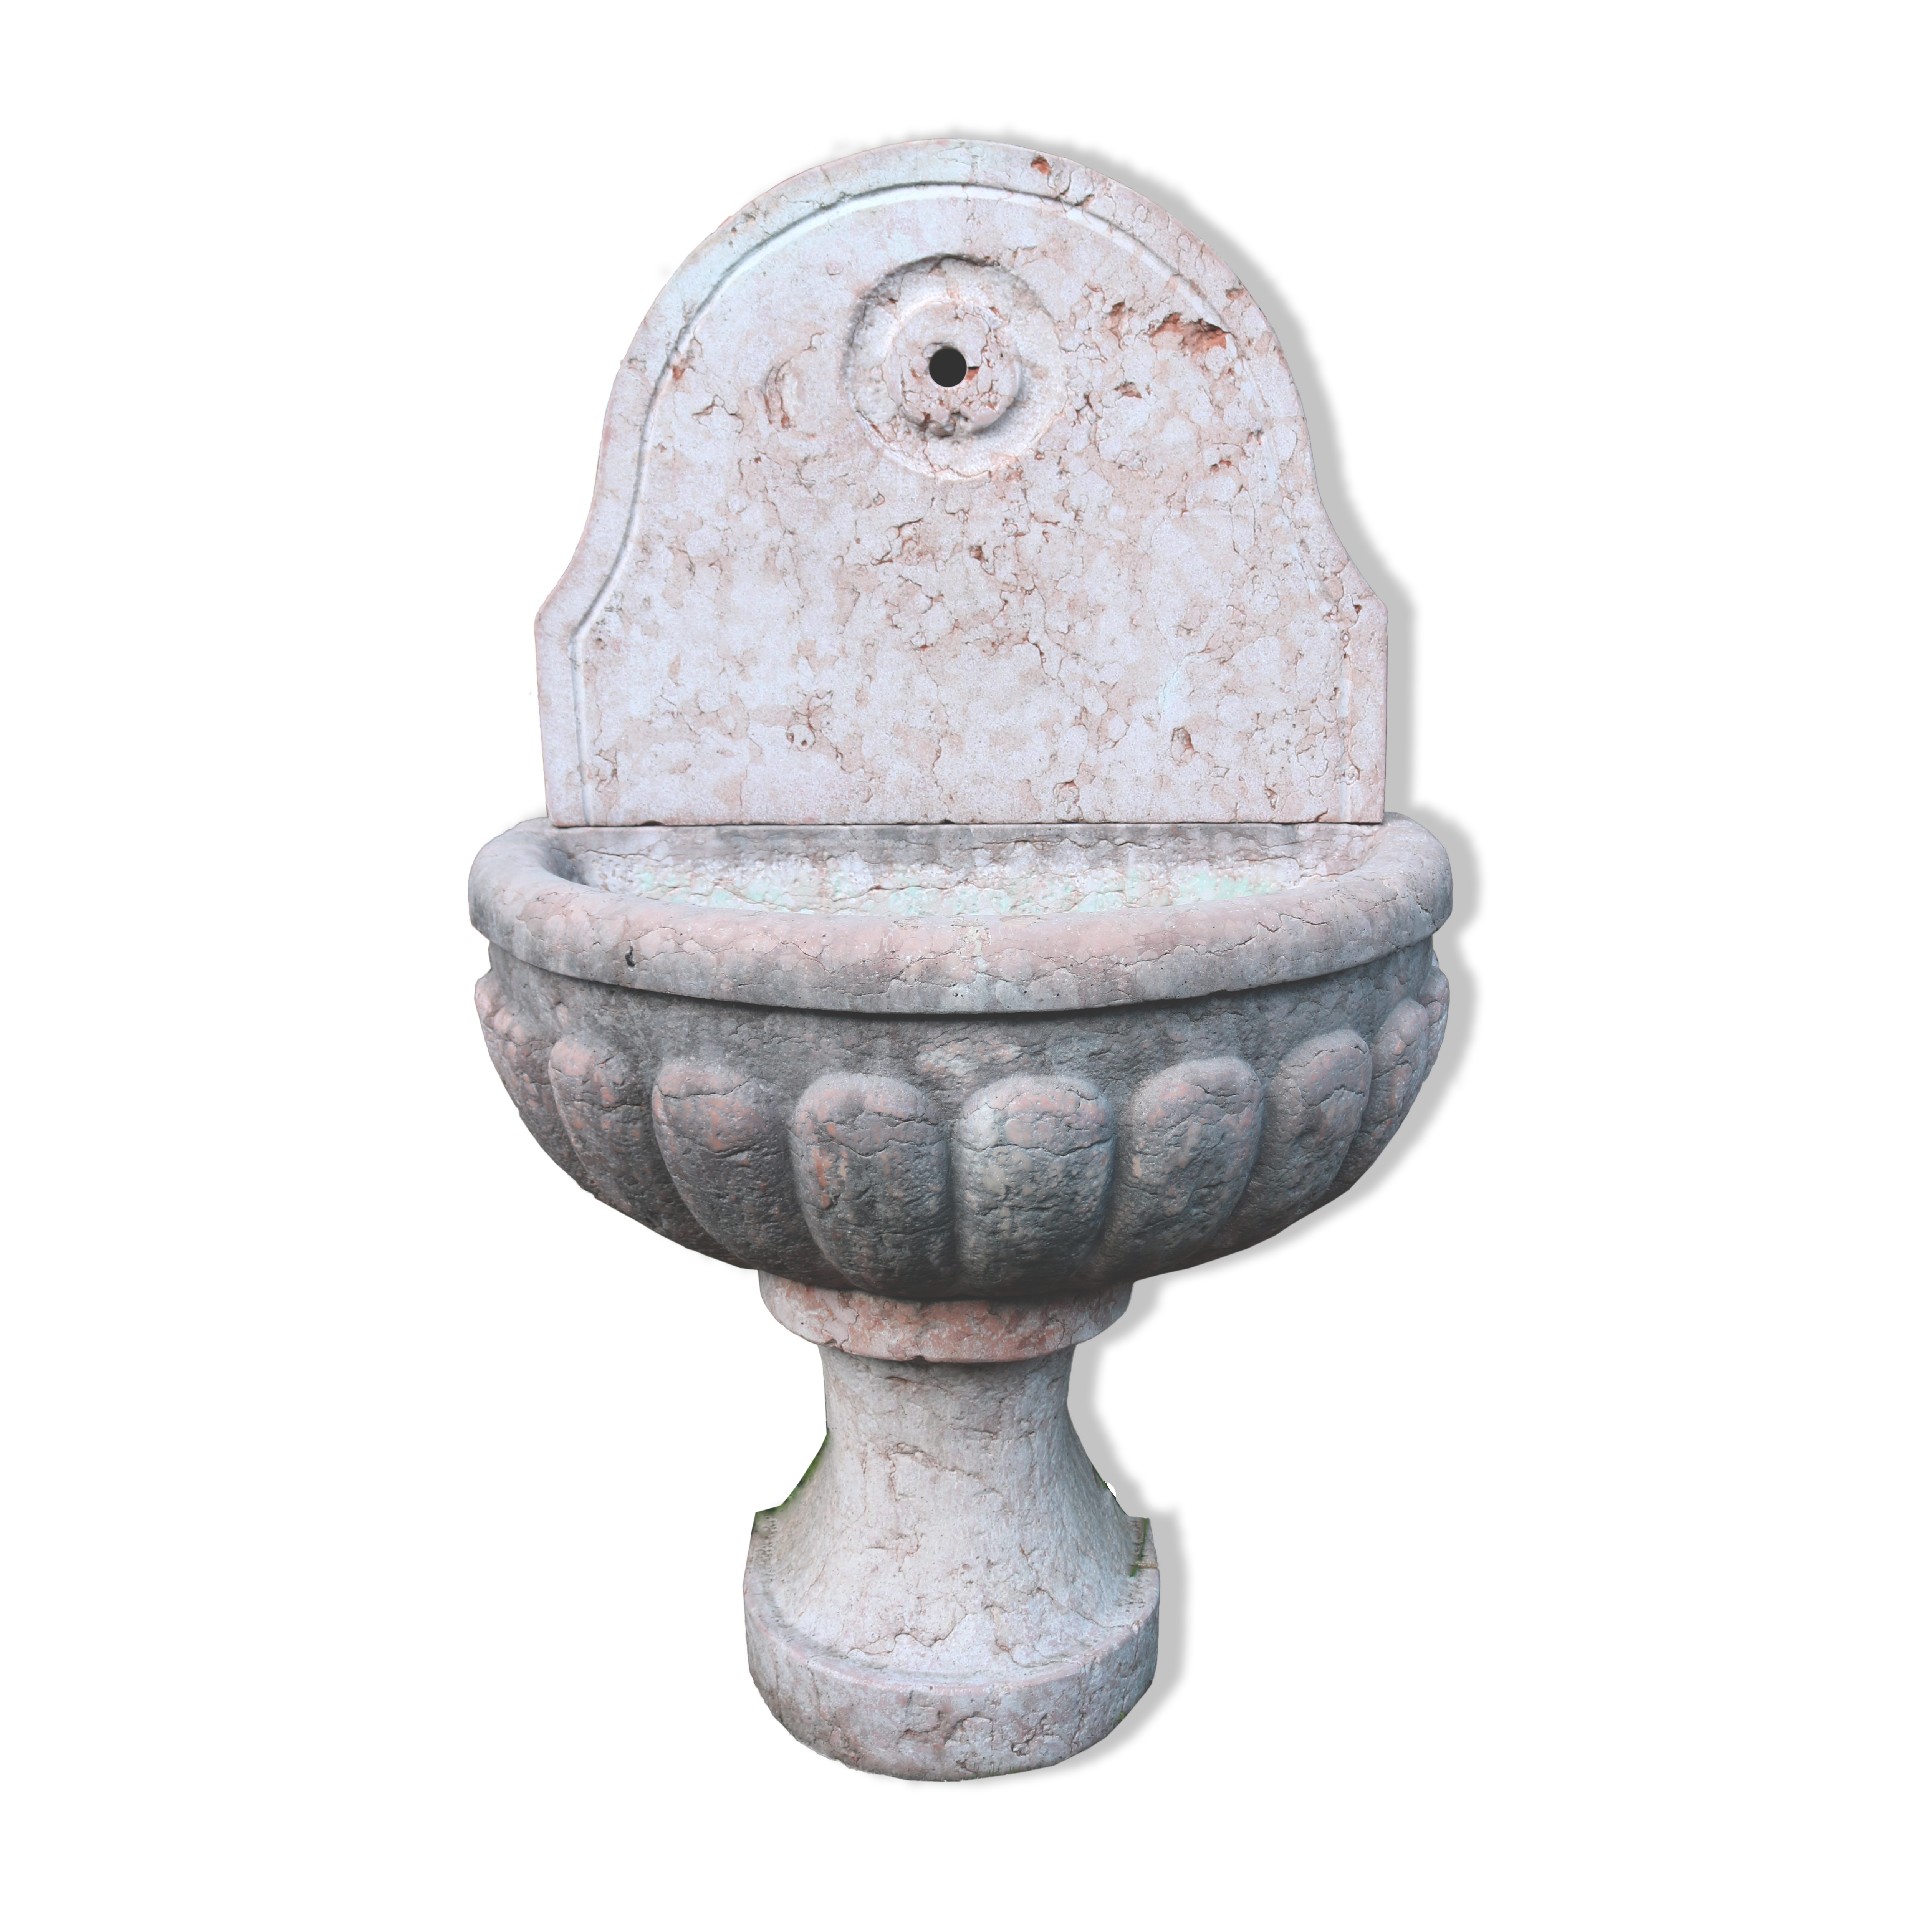 Antica fontana in marmo - Fontane Antiche - Arredo Giardino - Prodotti - Antichità Fiorillo